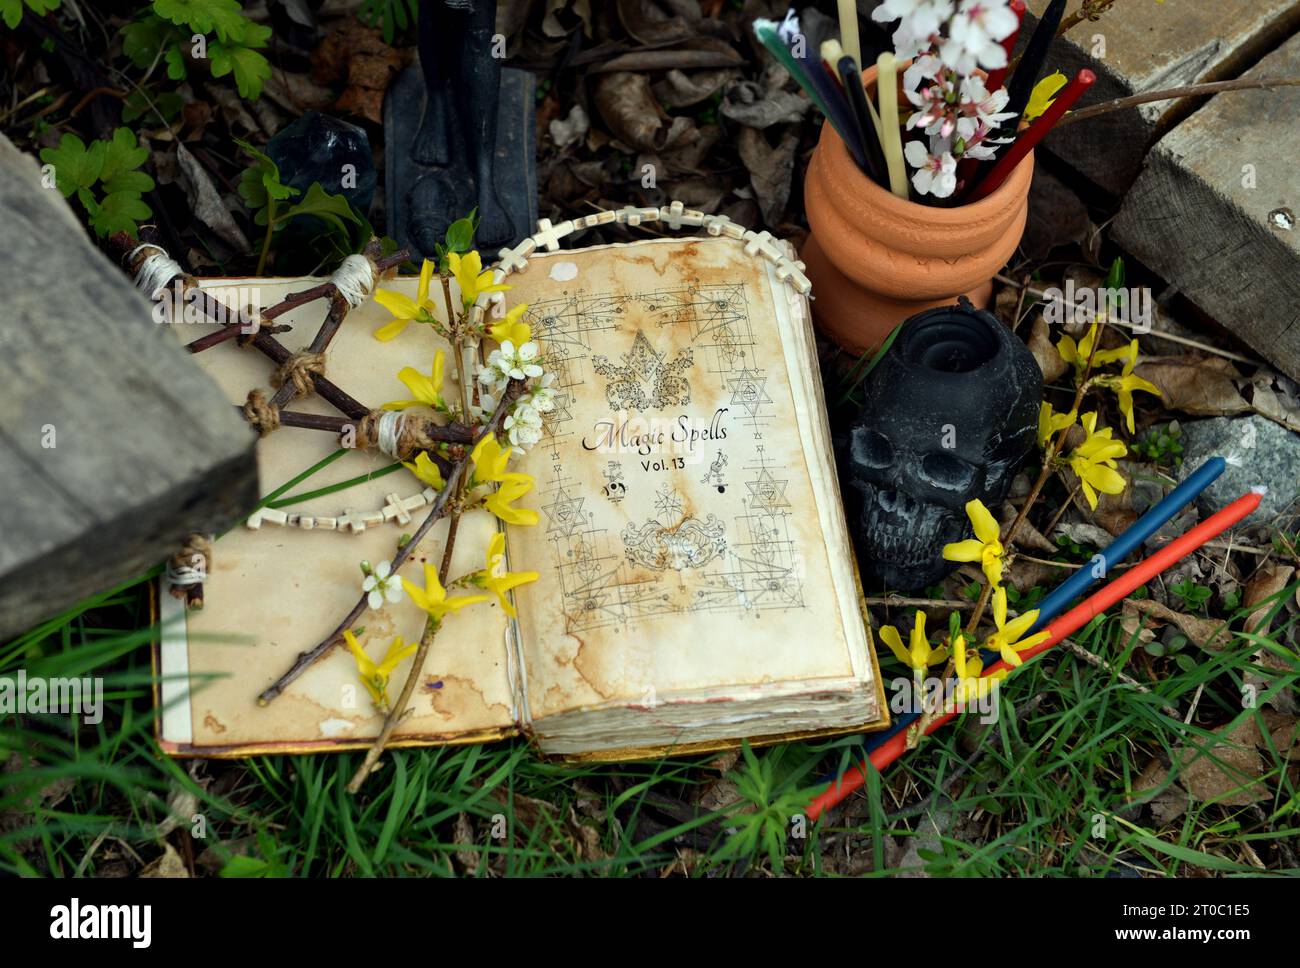 Livre magique de sorts, bougies et pentagramme sur autel rituel dans l'herbe. Nature morte occulte, ésotérique et divinatoire. Fond extérieur mystique avec vinta Banque D'Images